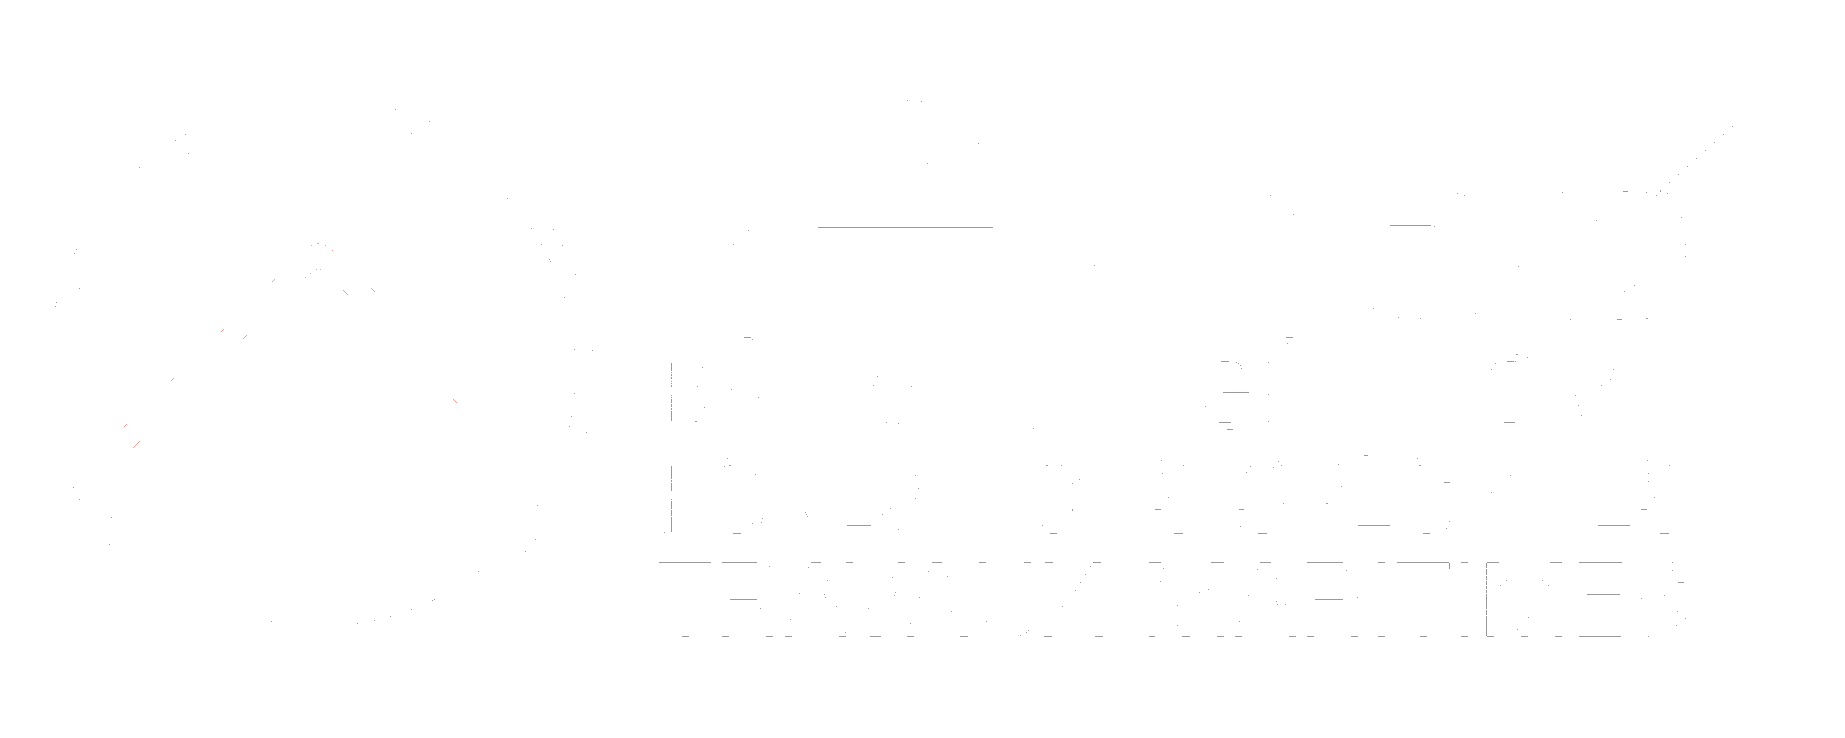 Arbe logo